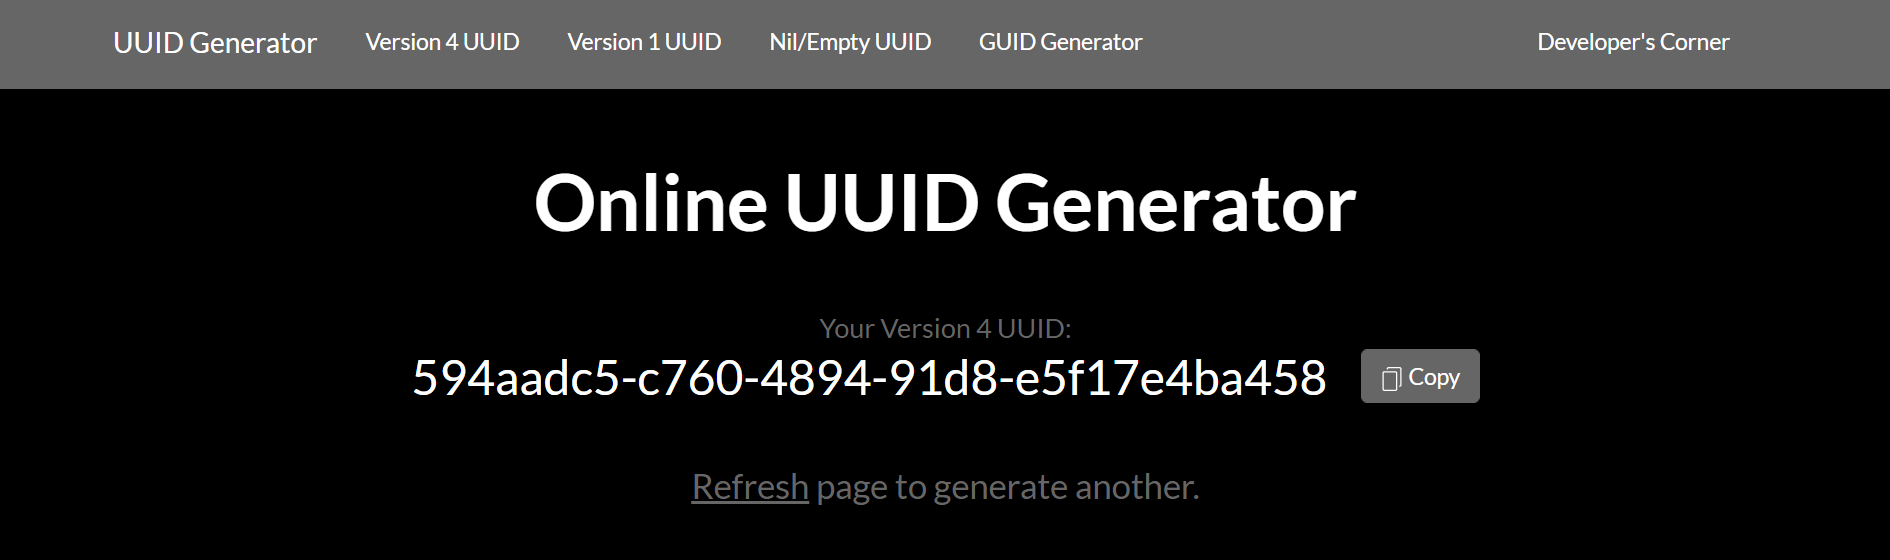 Image de l’écran d’accueil de UUIDGenerator.net avec création d'un UUID personnalisé